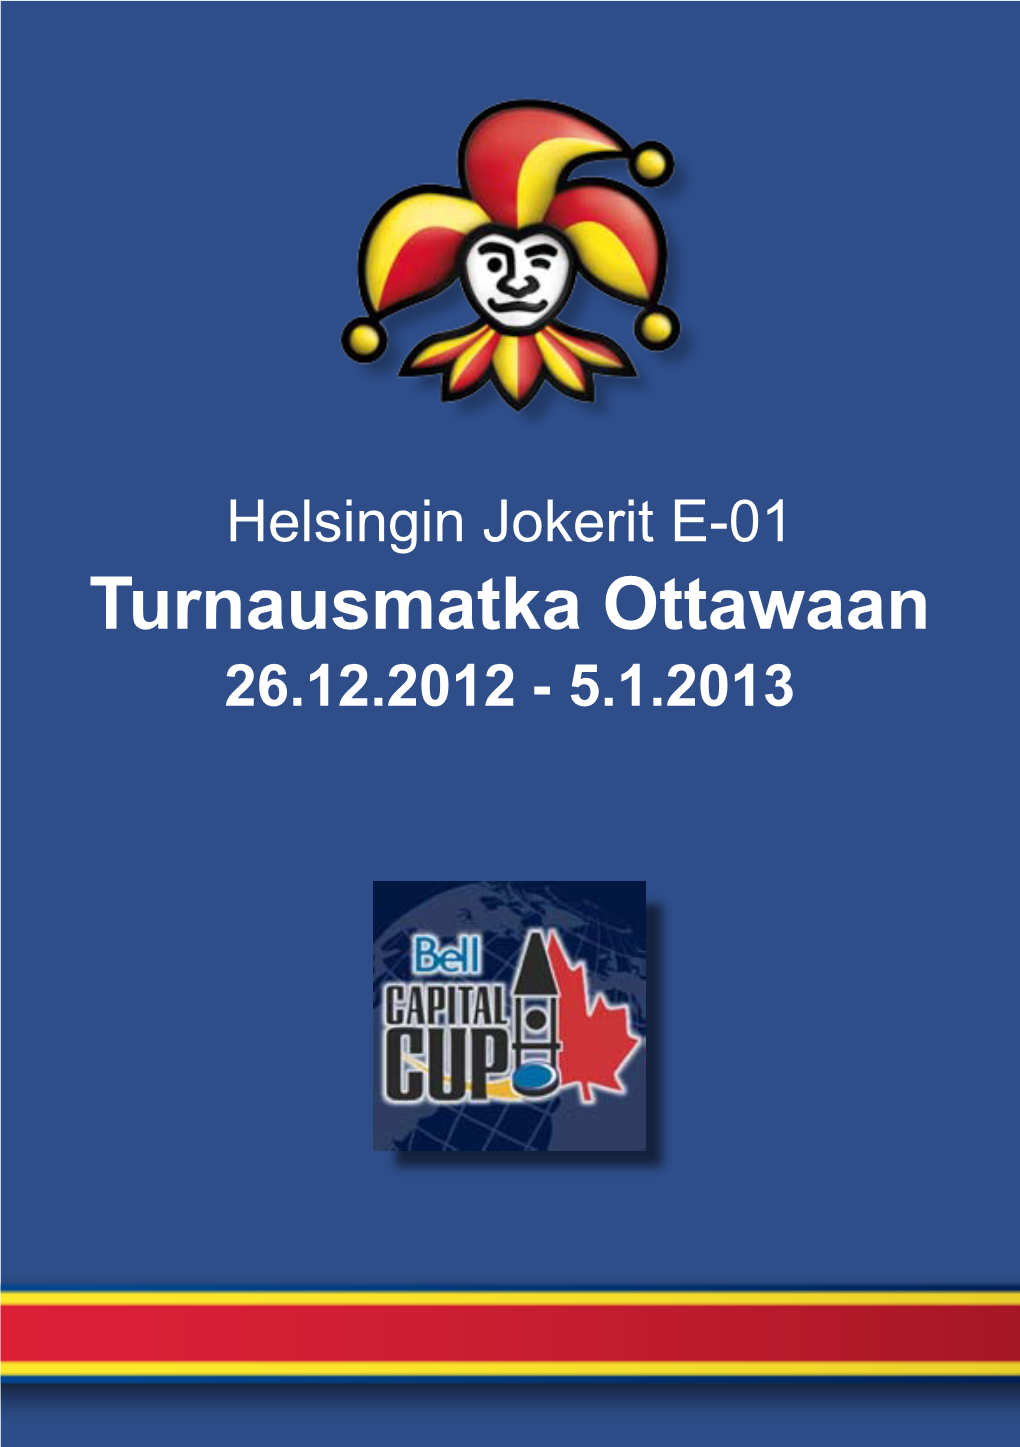 Turnausmatka Ottawaan 26.12.2012 - 5.1.2013 Jokerit E-01 Joukkueen Turnausmatkaa Tukemassa